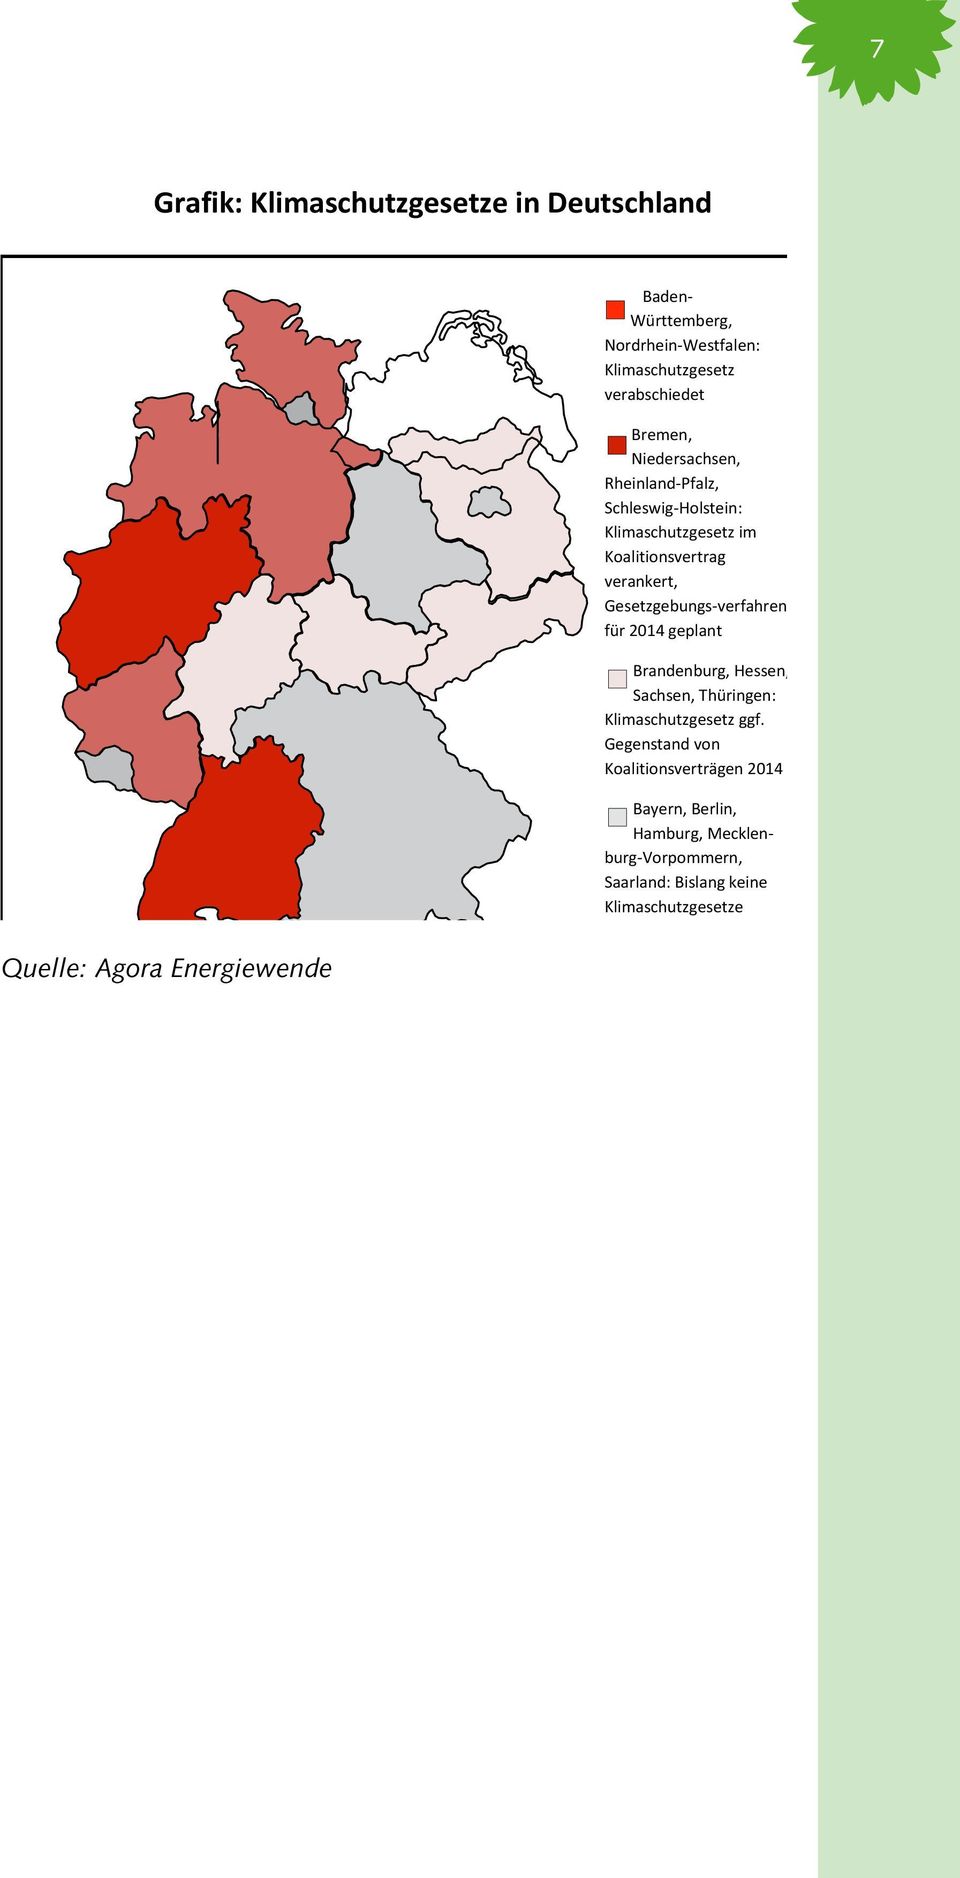 Gesetzgebungs-verfahren für 2014 geplant Brandenburg, Hessen, Sachsen, Thüringen: Klimaschutzgesetz ggf.